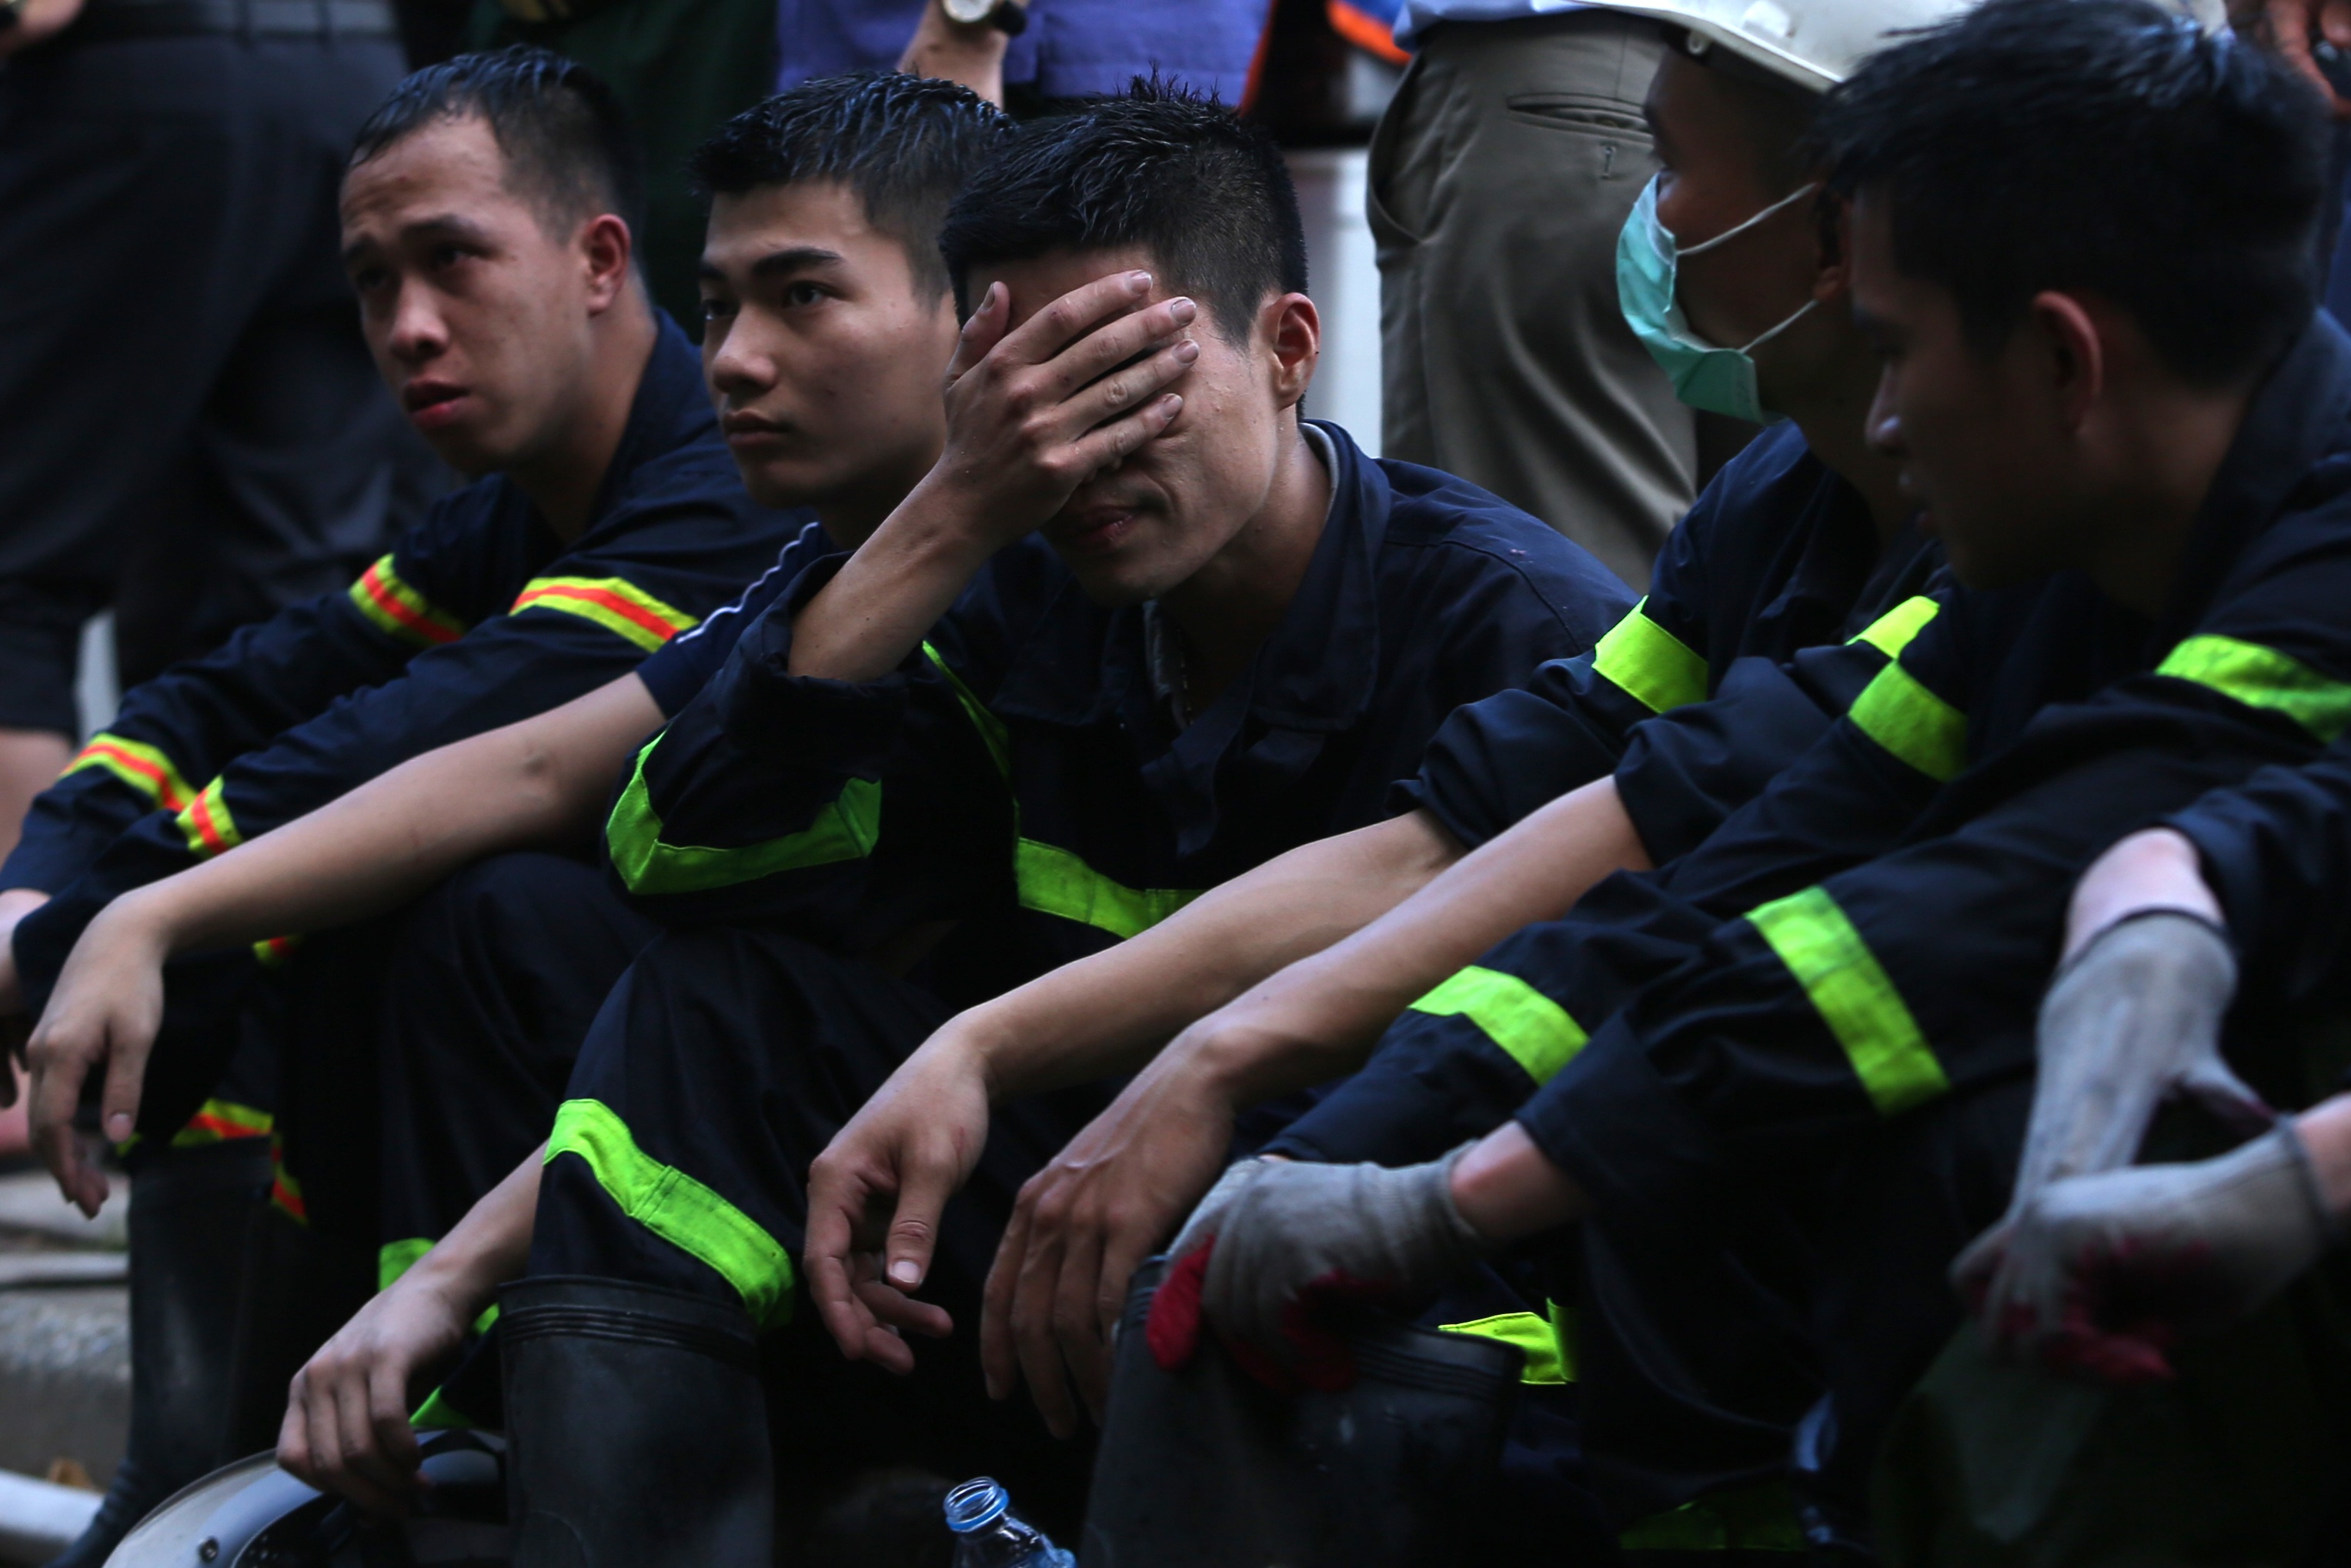 Những chiến sĩ kiệt sức sau đám cháy, đau đớn trước hy sinh của đồng đội - 3